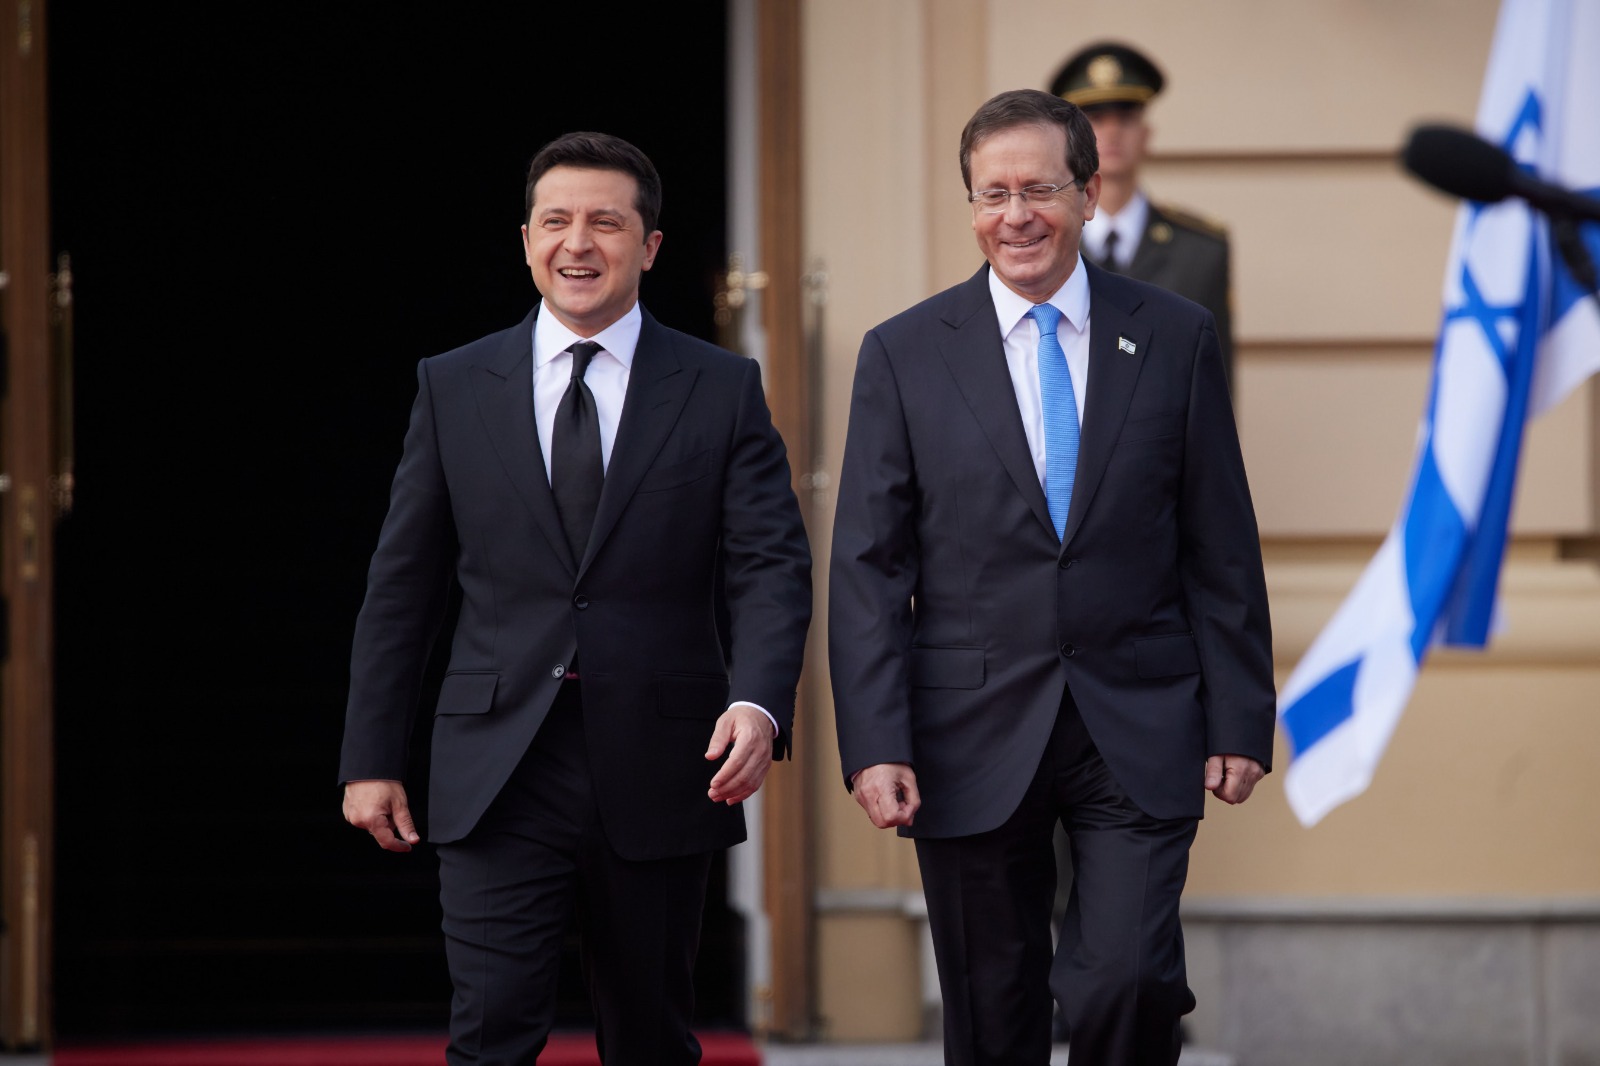 ההקשר הישראלי - נשיא המדינה הרצוג בפגישה עם נשיא אוקראינה זלנסקי